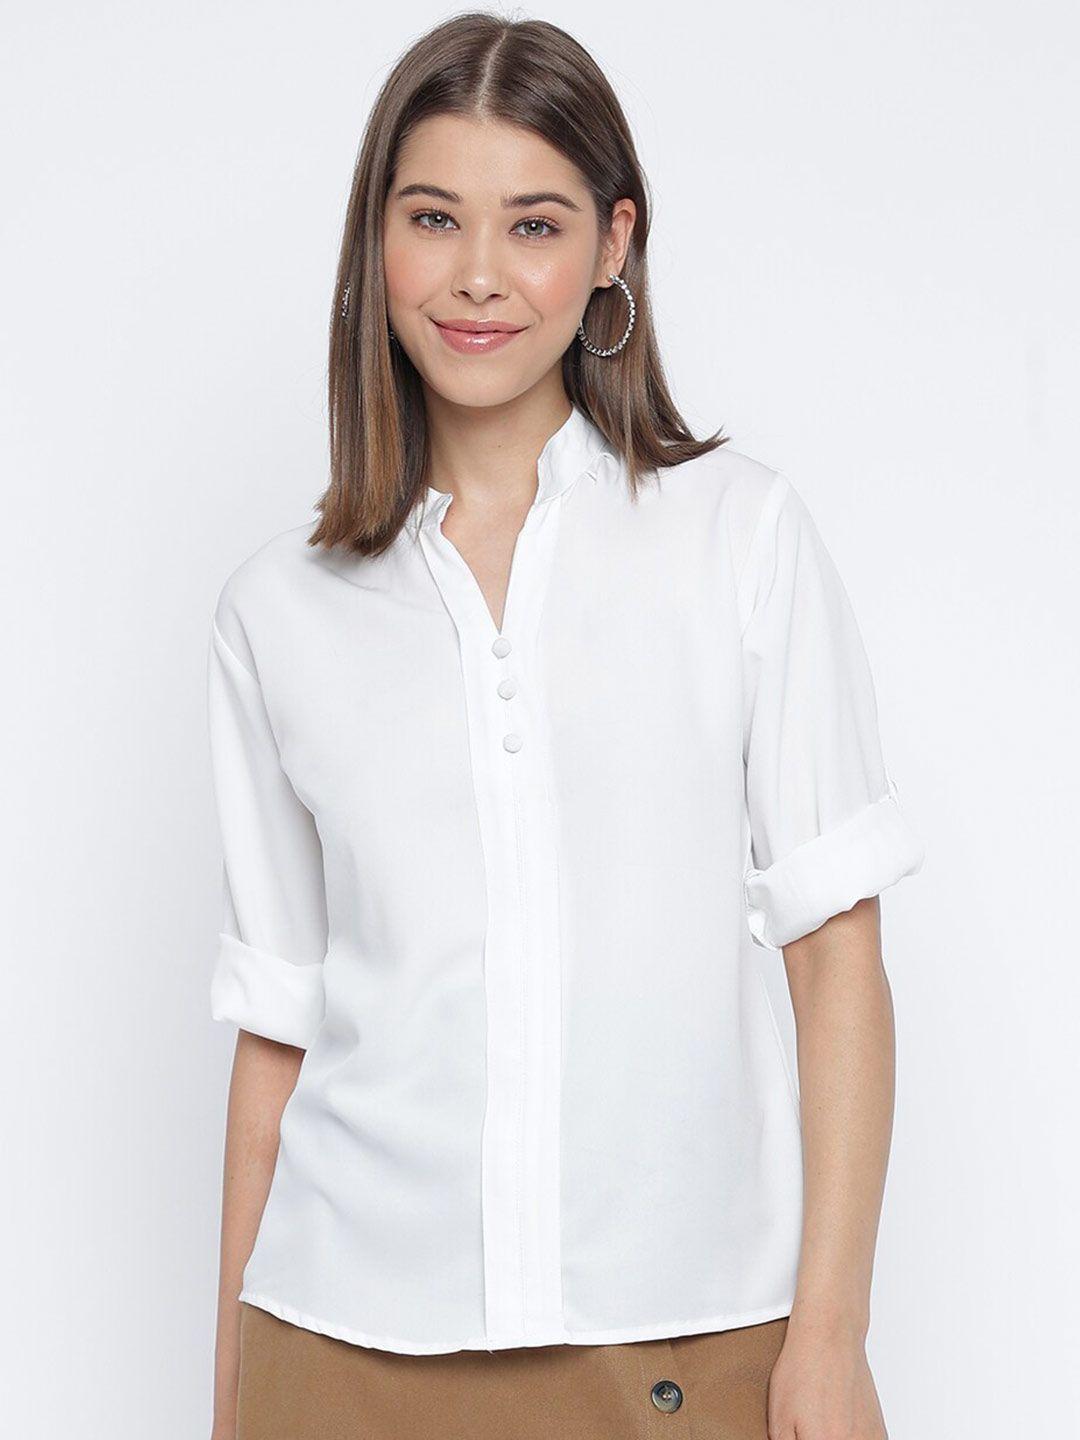 mayra mandarin collar roll-up sleeves shirt style top